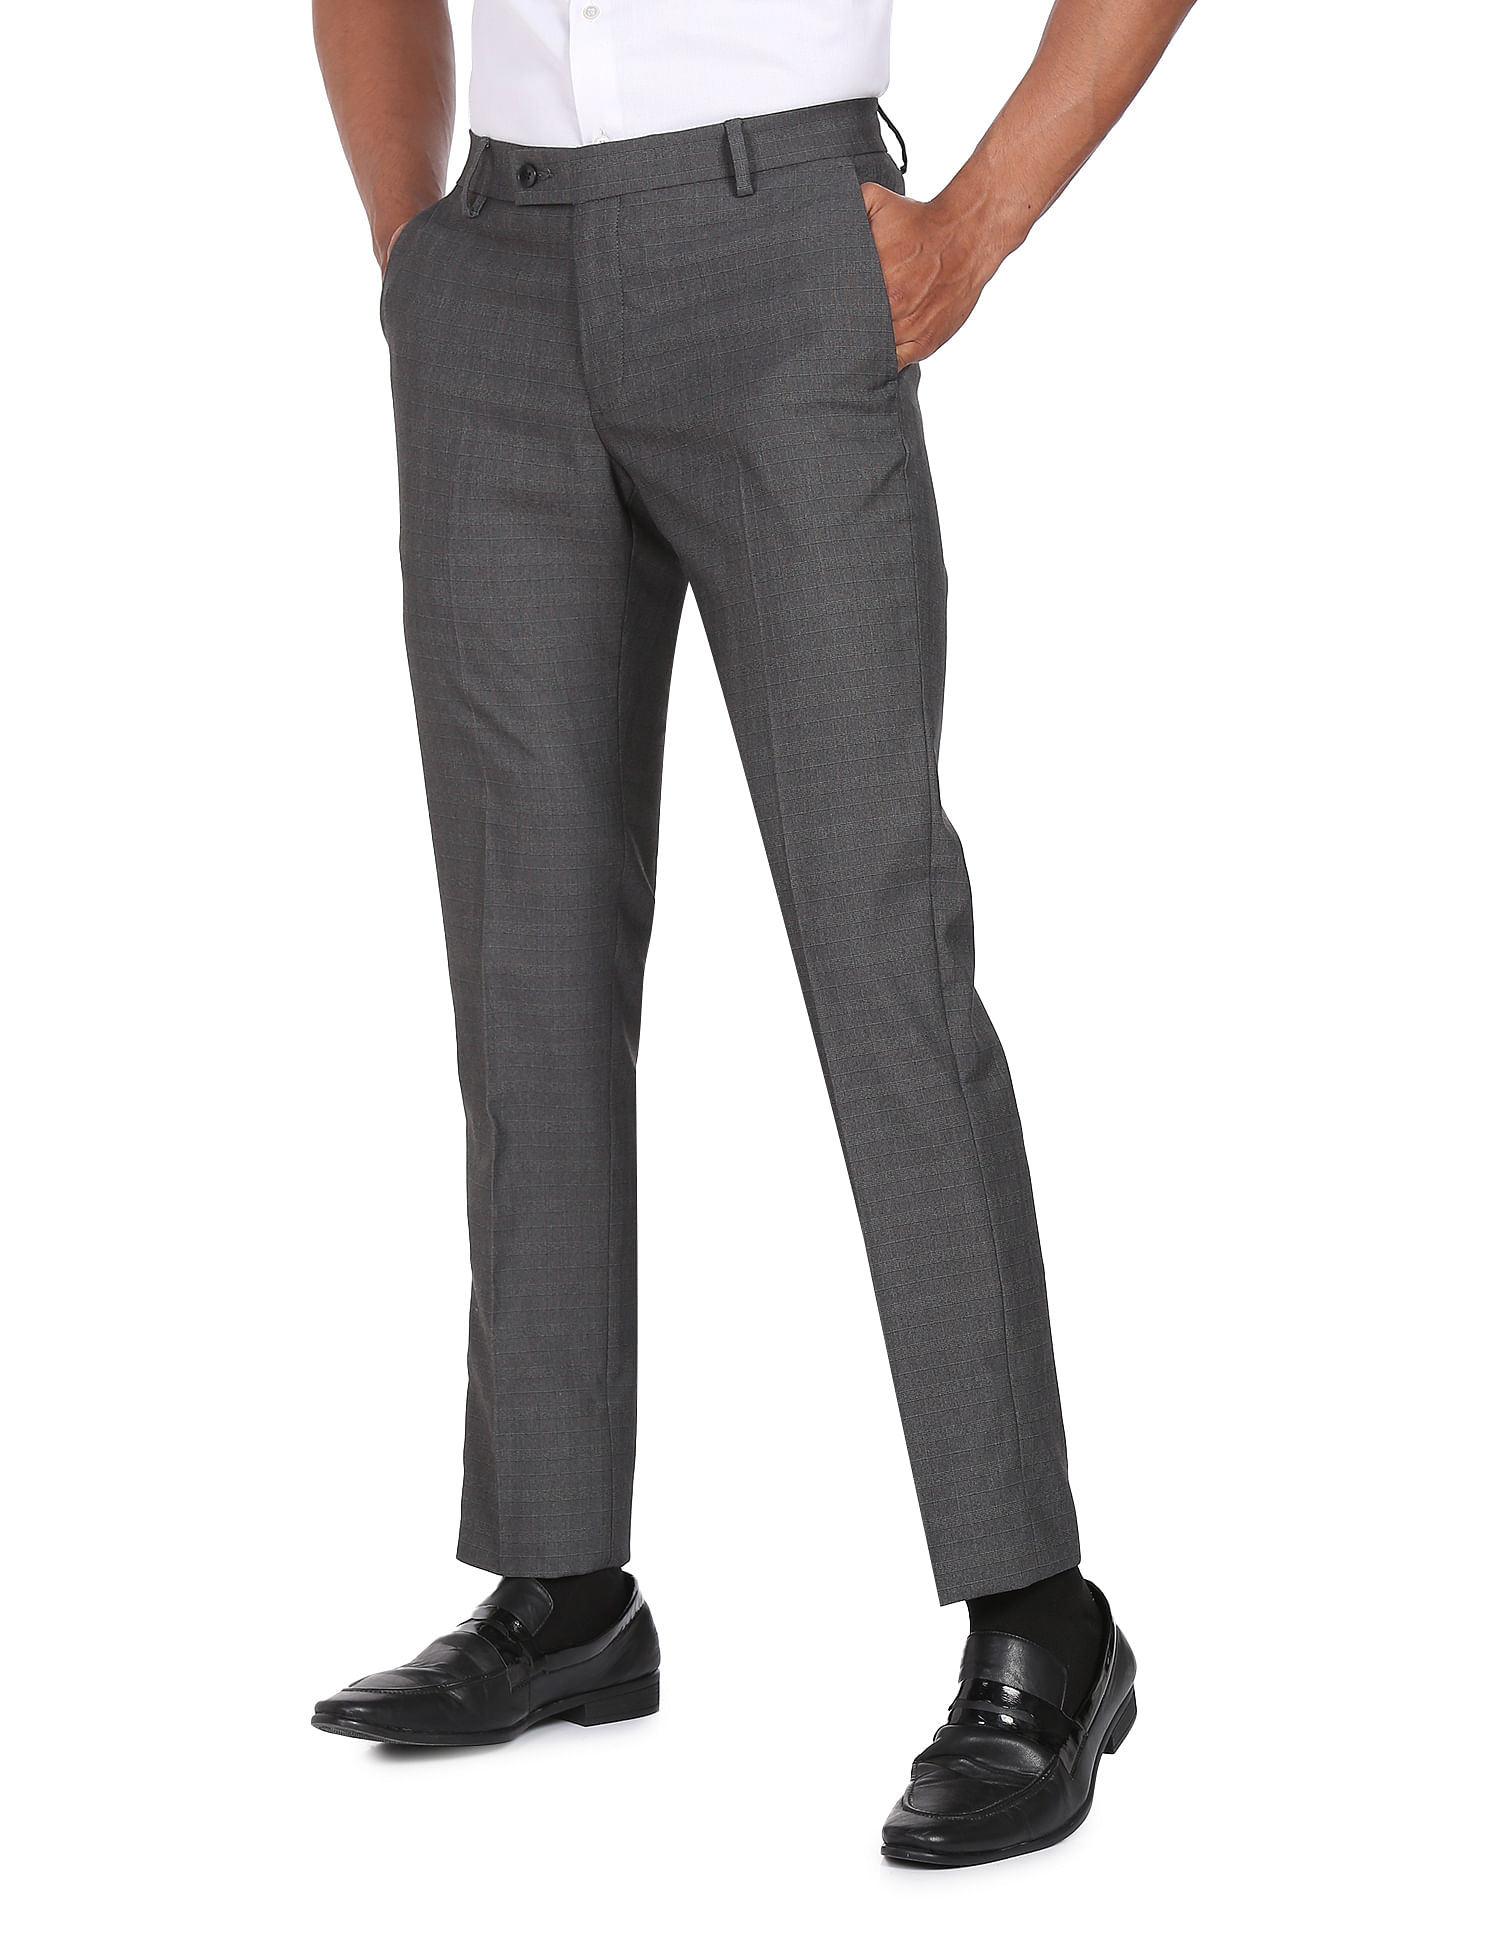 DTI Men's Suit Classic Fit Dress Pants Separates Slacks Pleated Trouser  Black (30W x 32L, Black) at Amazon Men's Clothing store: Business Suit Pants  Separates